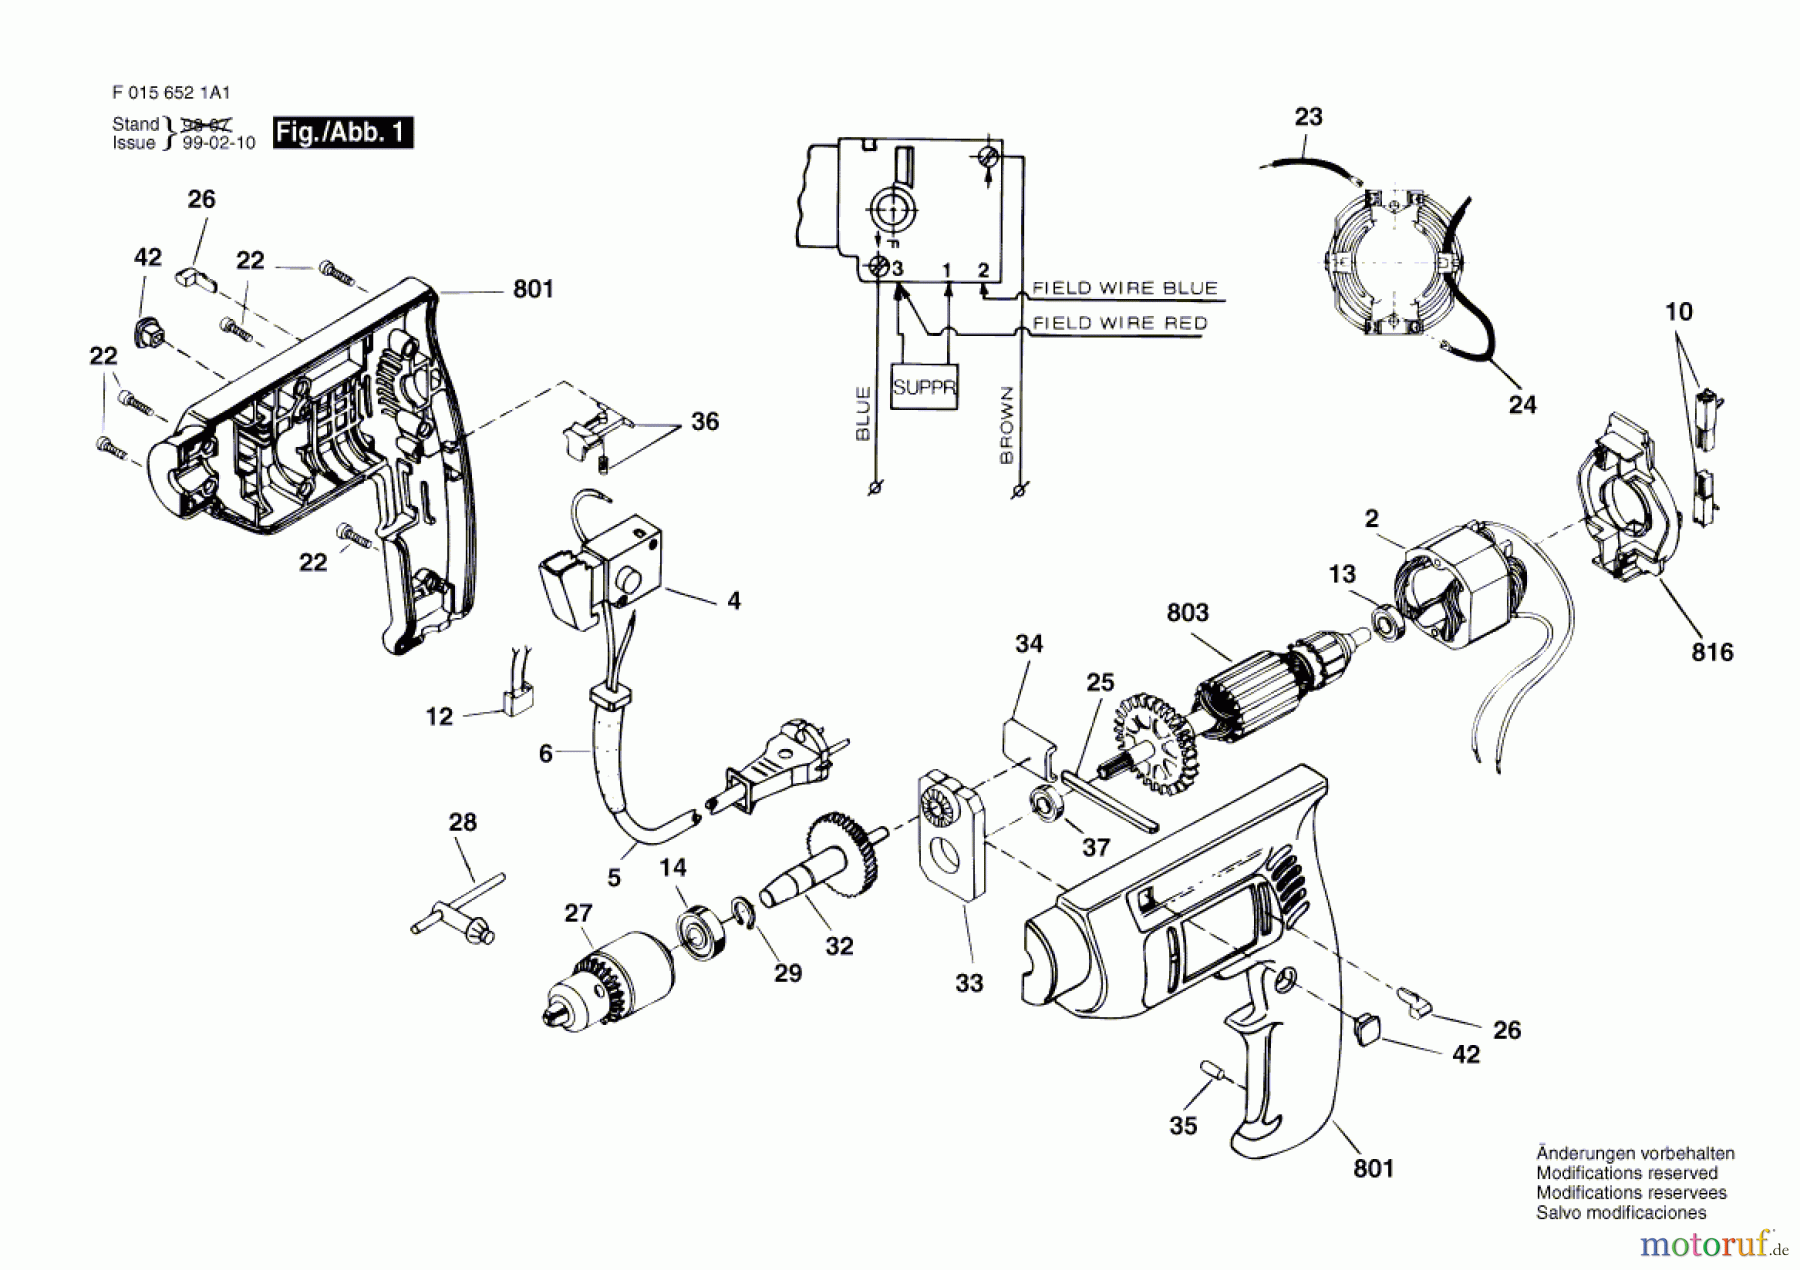  Bosch Werkzeug Bohrmaschine 6521 H1 Seite 1